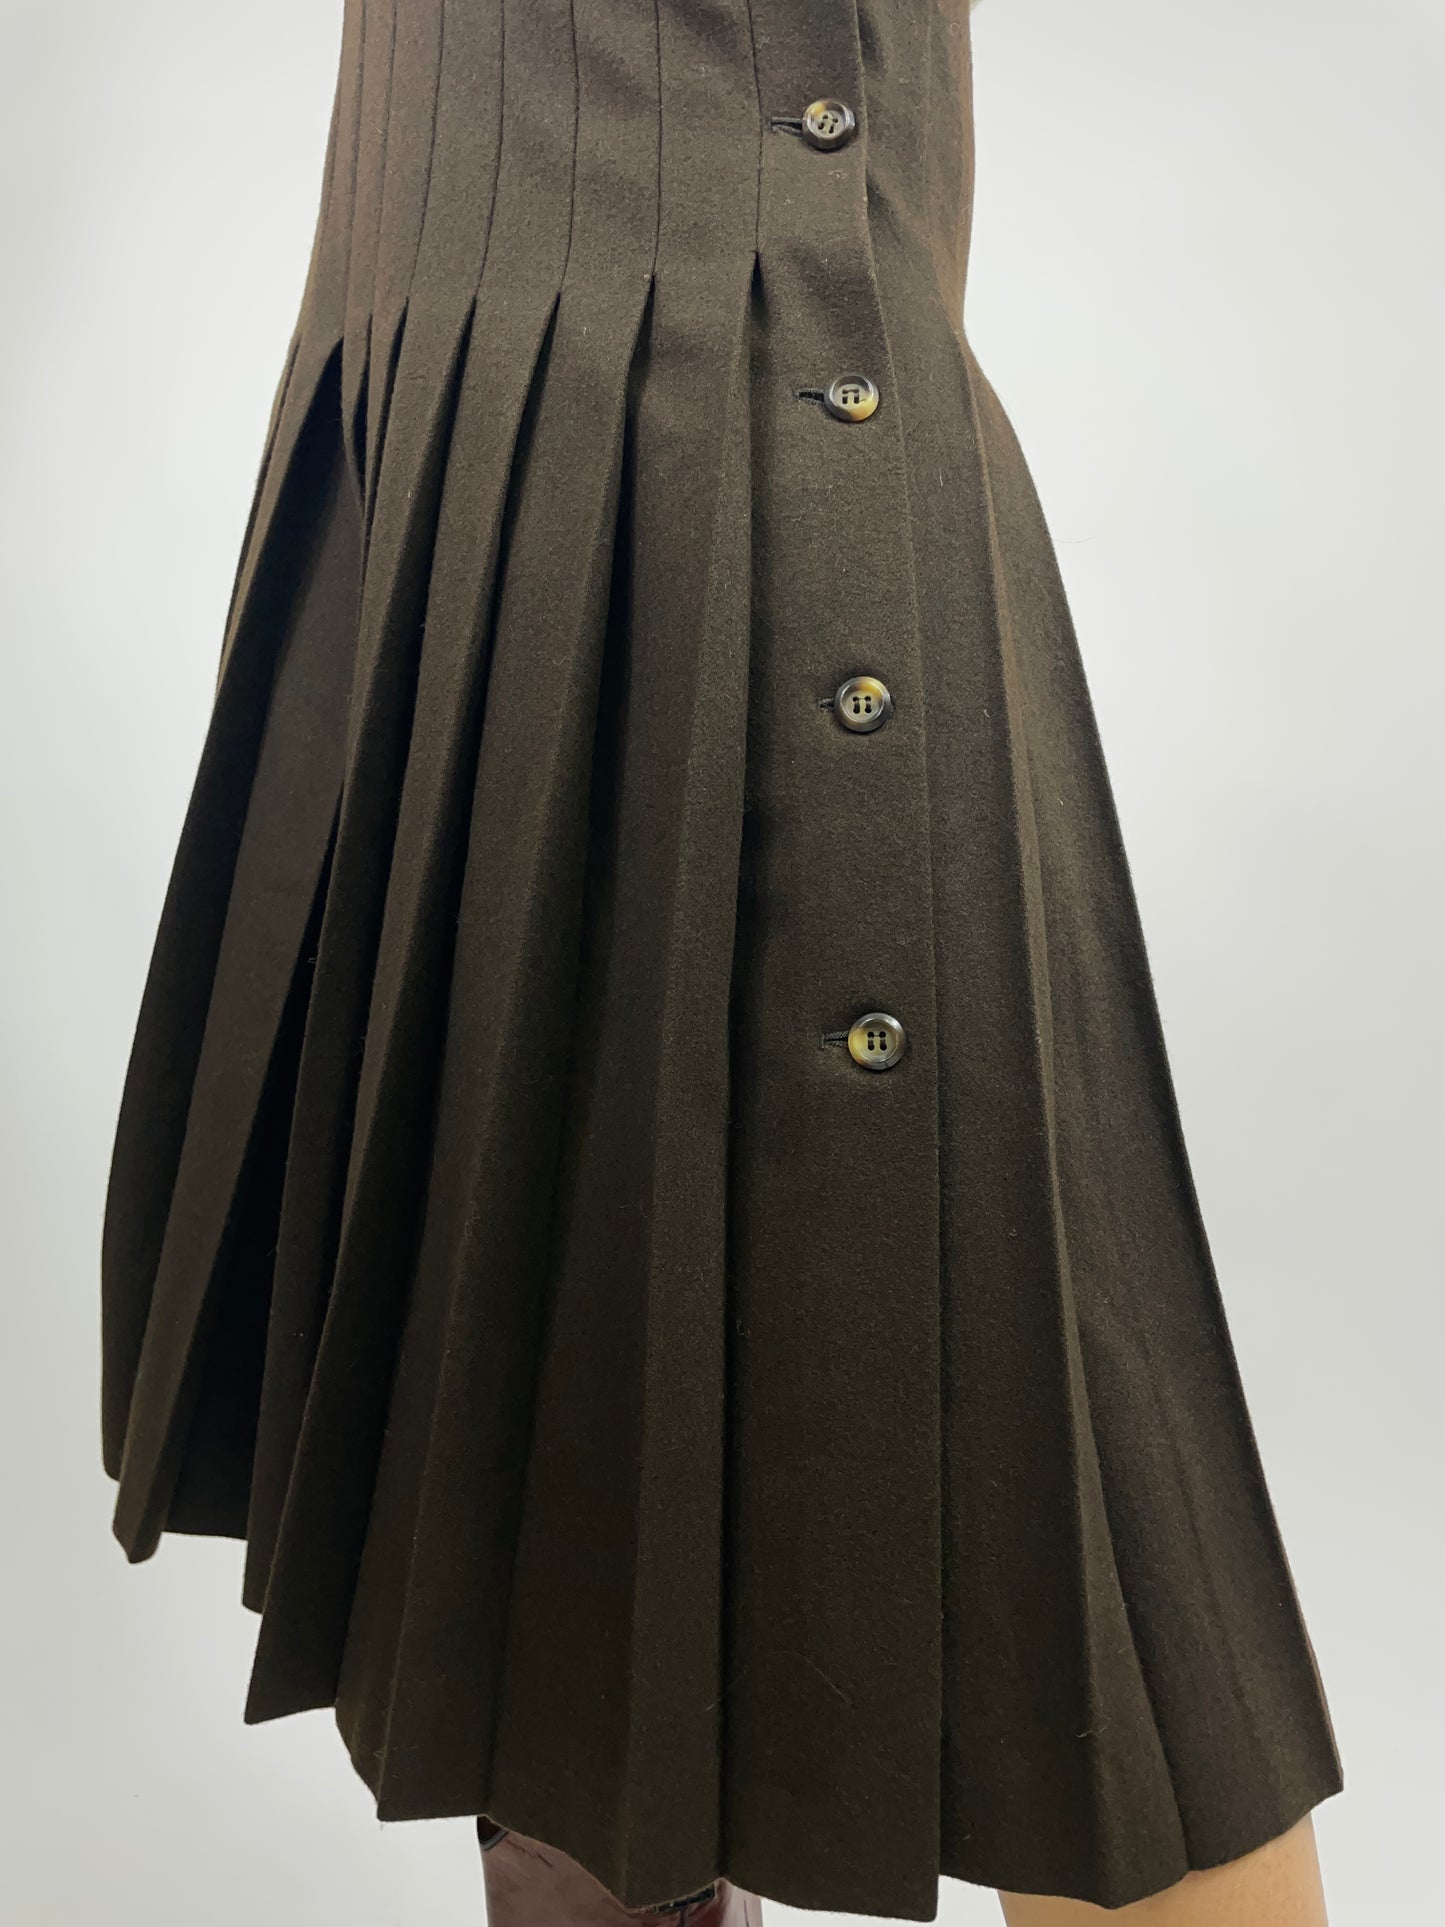 Valentino 1980s skirt